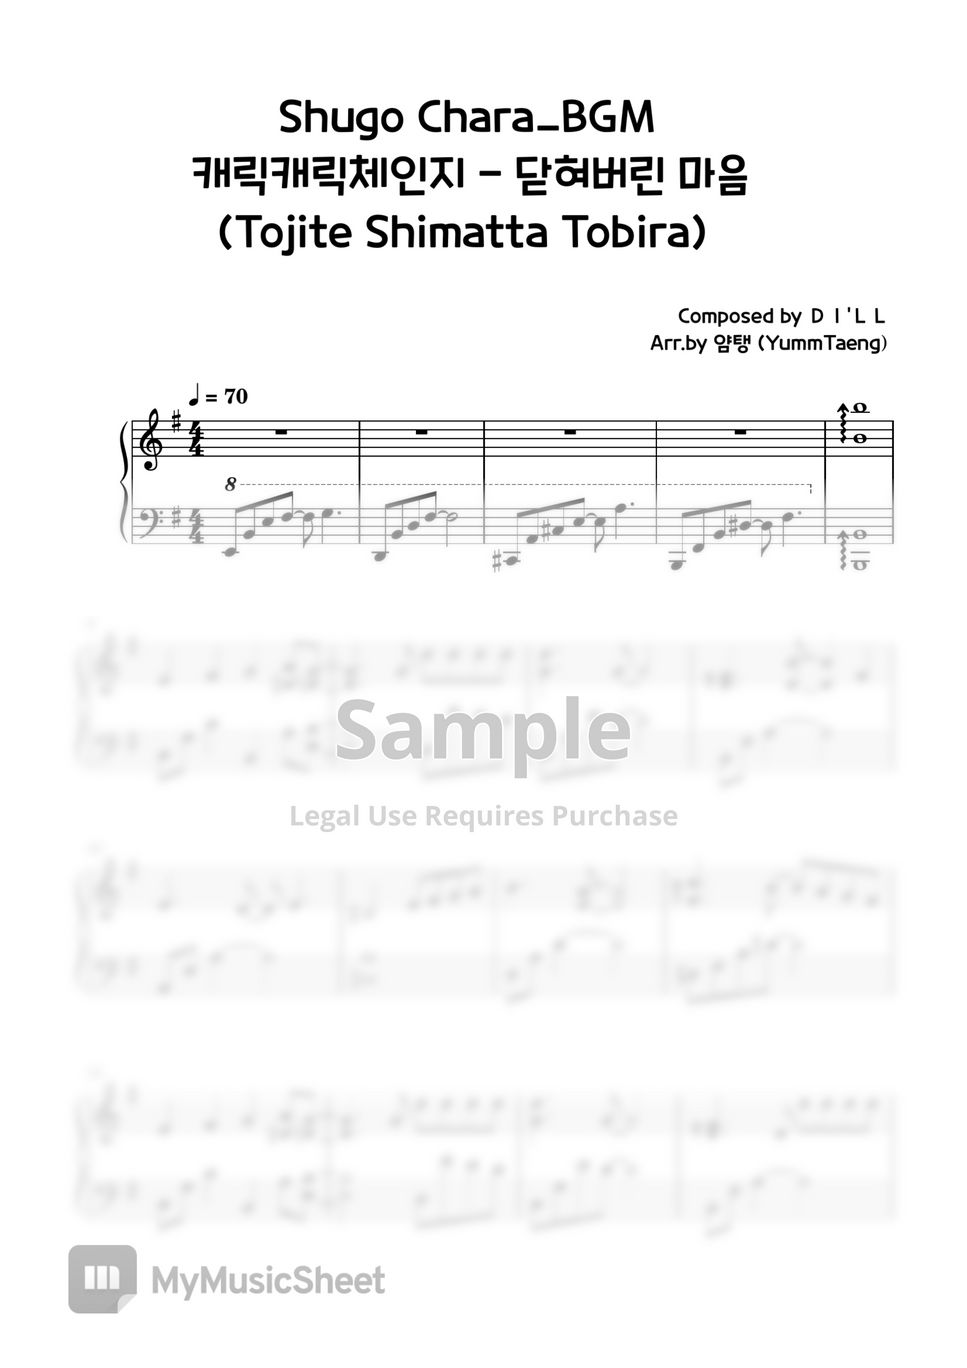 Shugo Chara! - Tojite Shimatta Tobira by YummTaeng